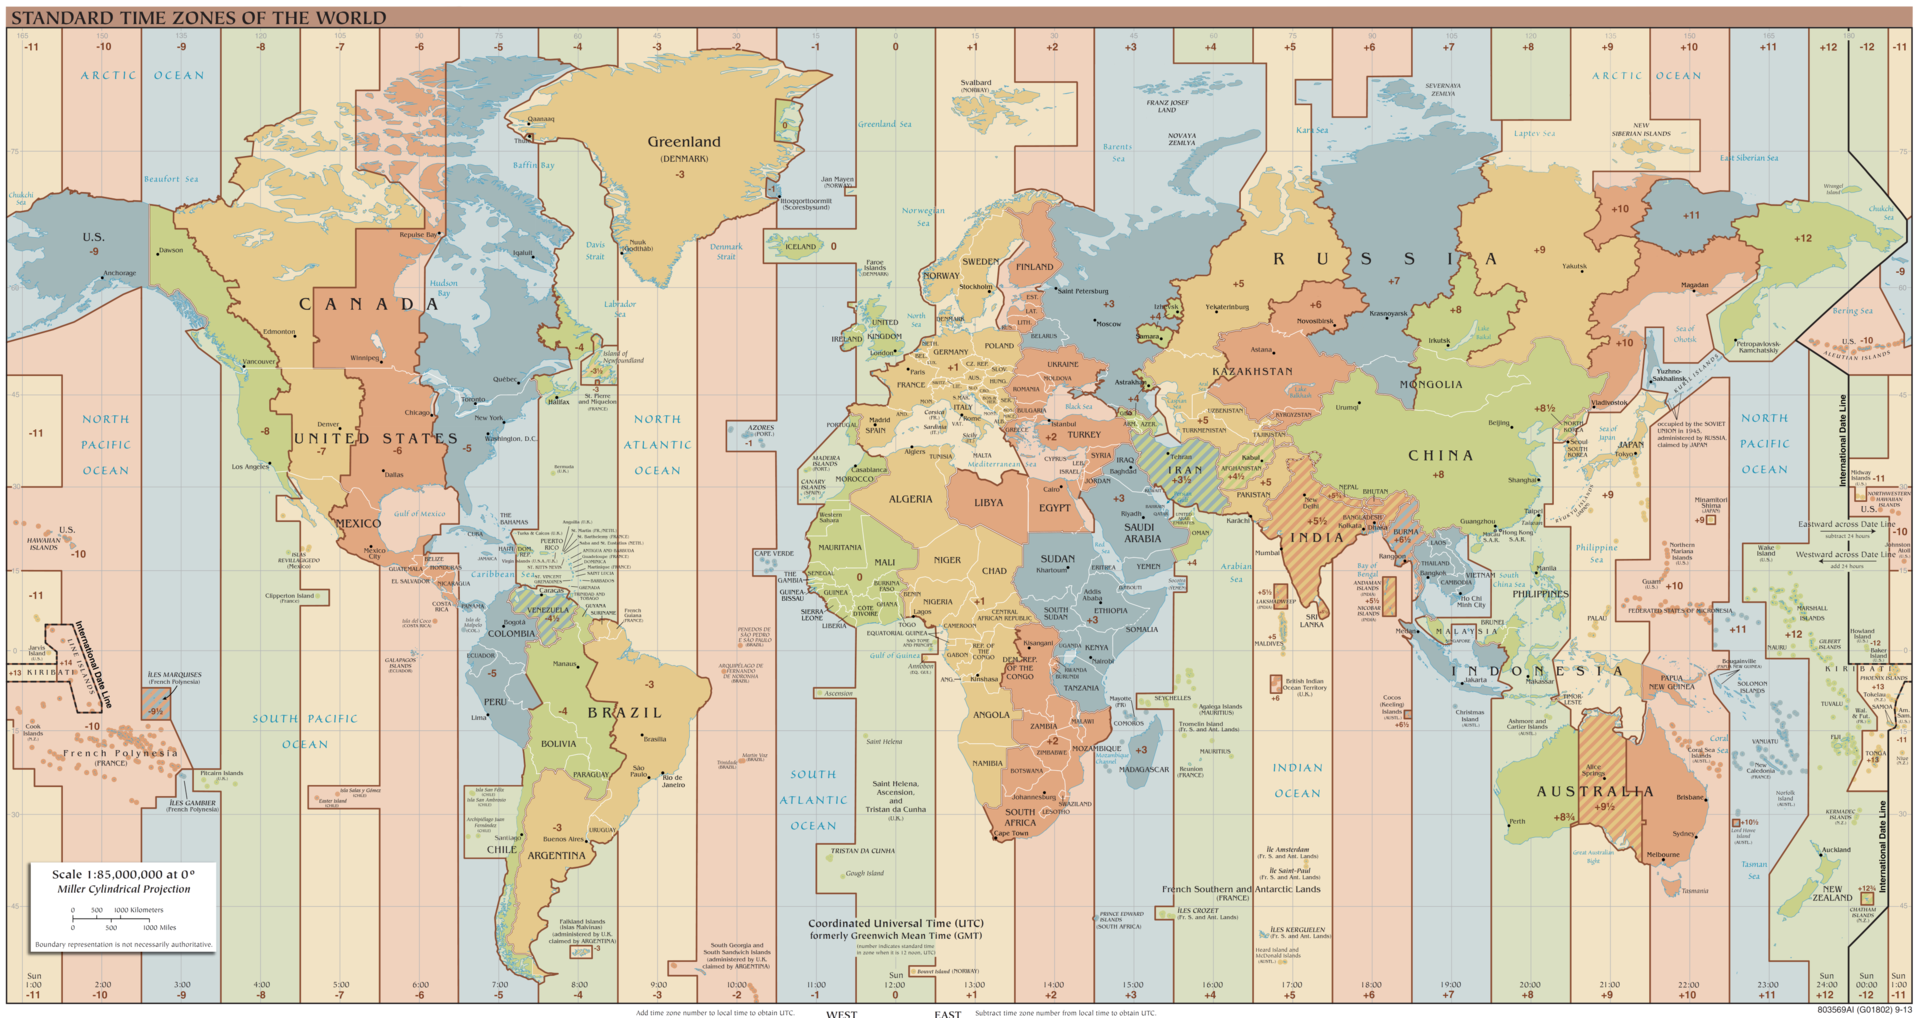 mapa časových pásem Časová pásma na zeměkouli   Kalendář365.cz   přehled mapa časových pásem